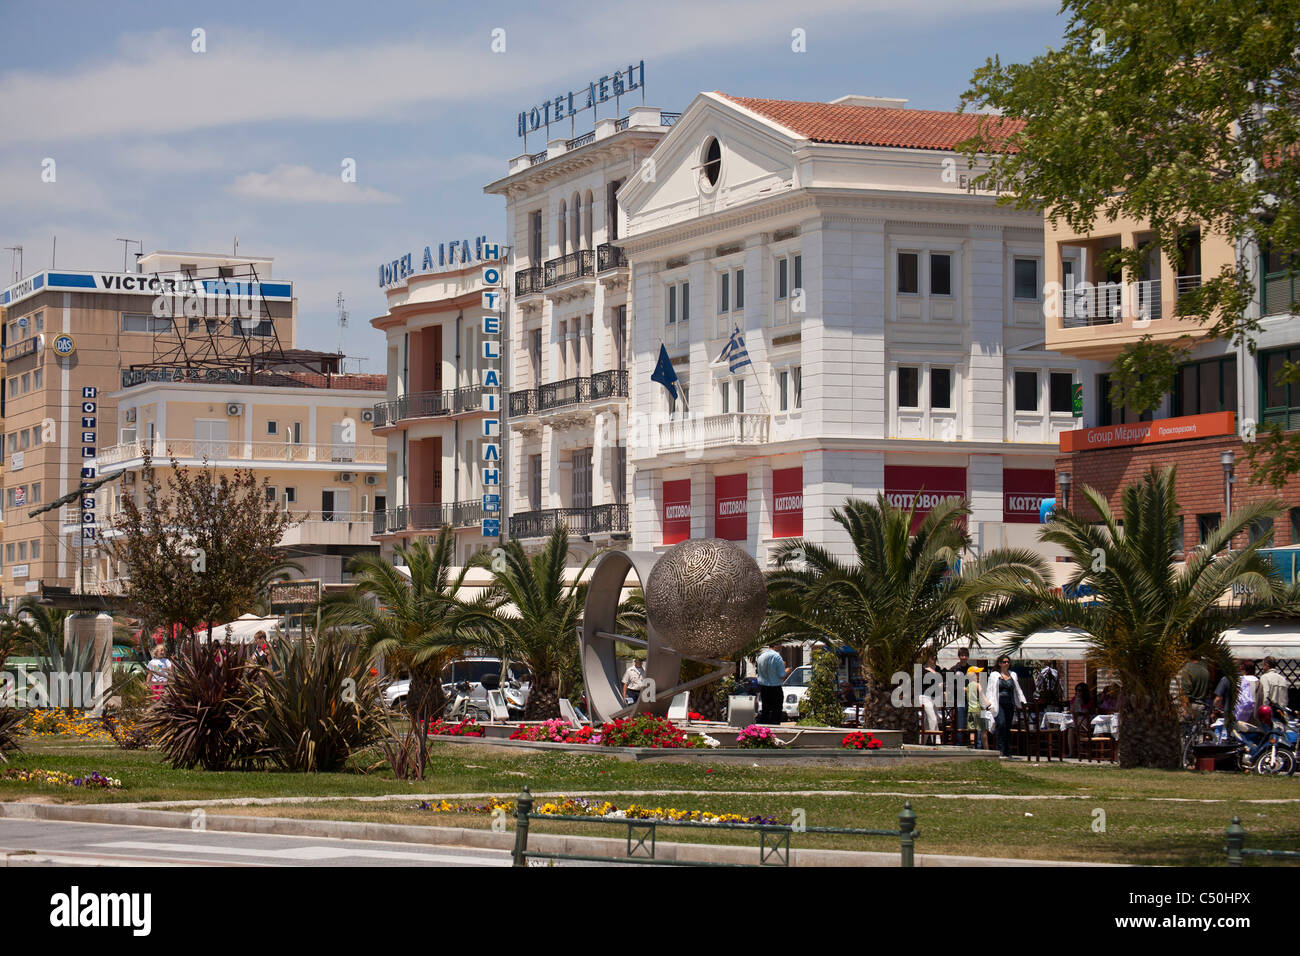 Hotel Aegli et un parc dans la ville portuaire côtière Volos en Thessalie sur le continent grec, Grèce Banque D'Images